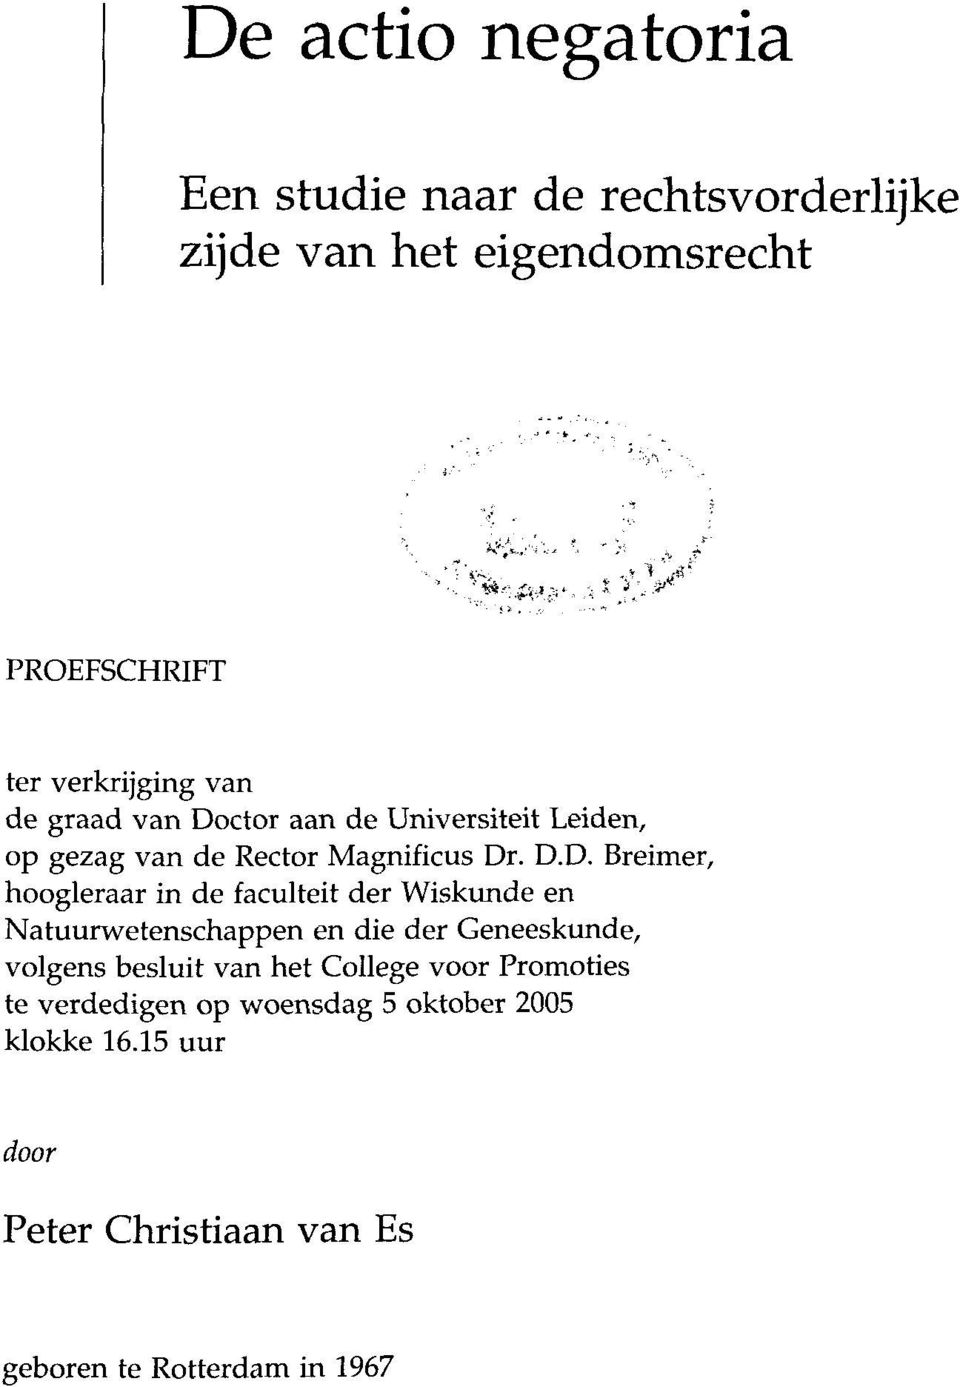 ctor aan de Universiteit Leiden, op gezag van de Rector Magnificus Dr